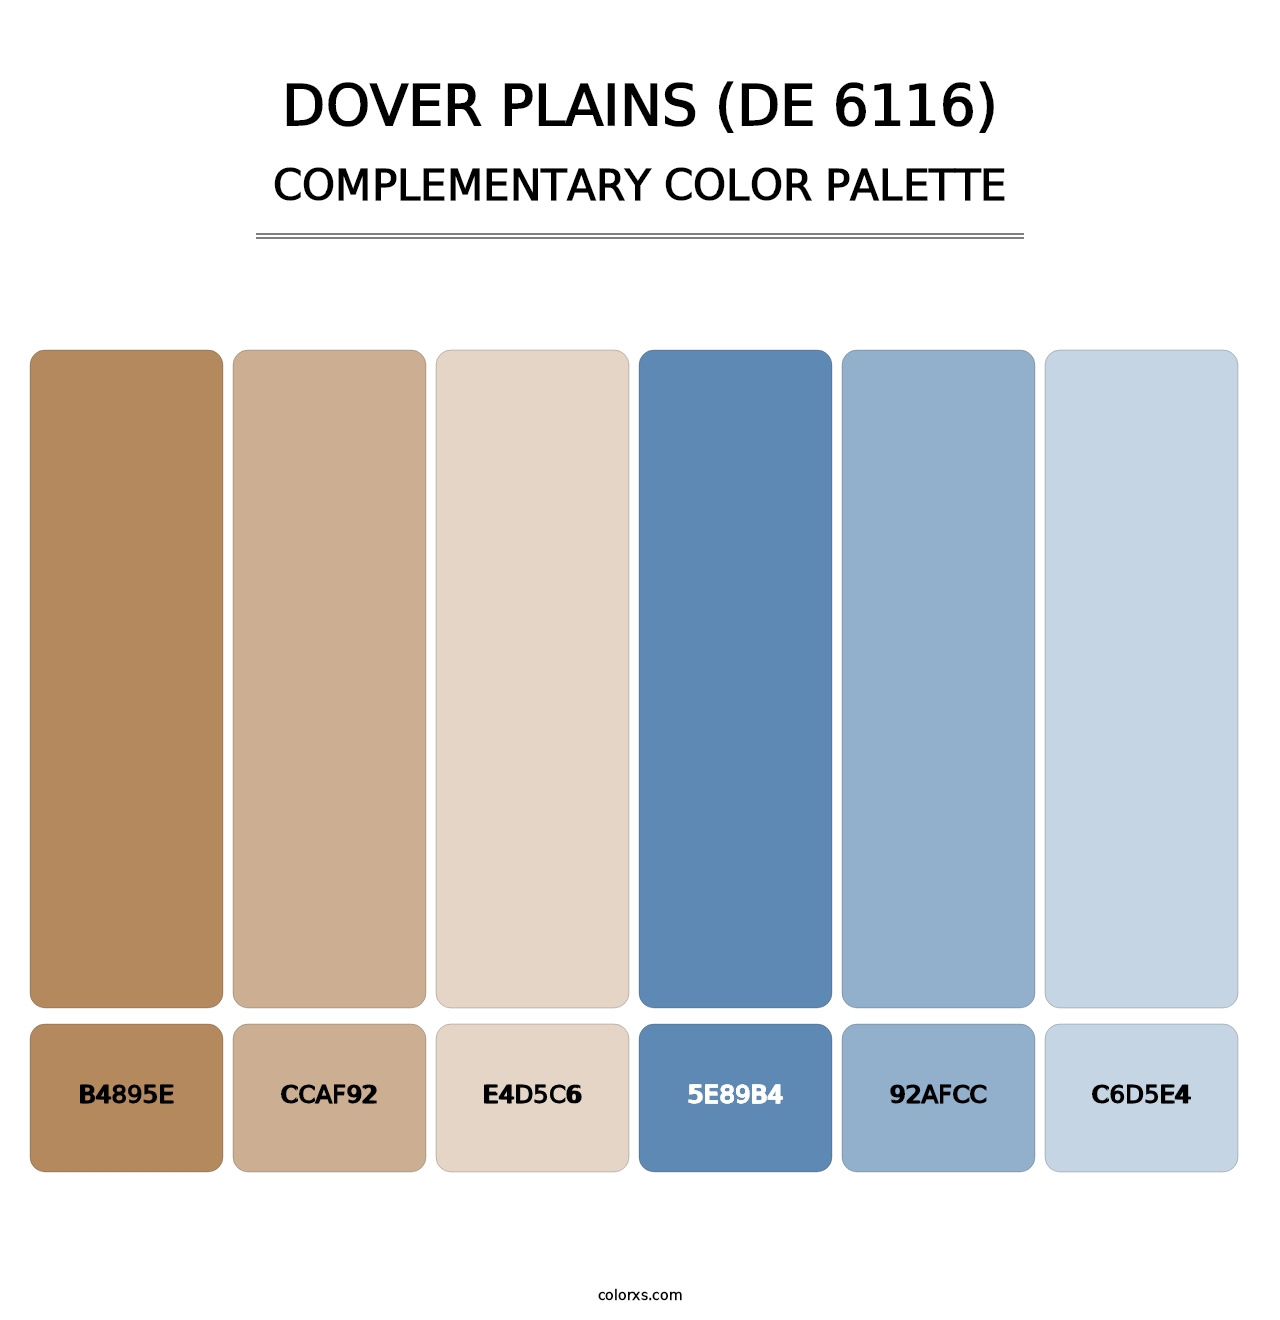 Dover Plains (DE 6116) - Complementary Color Palette